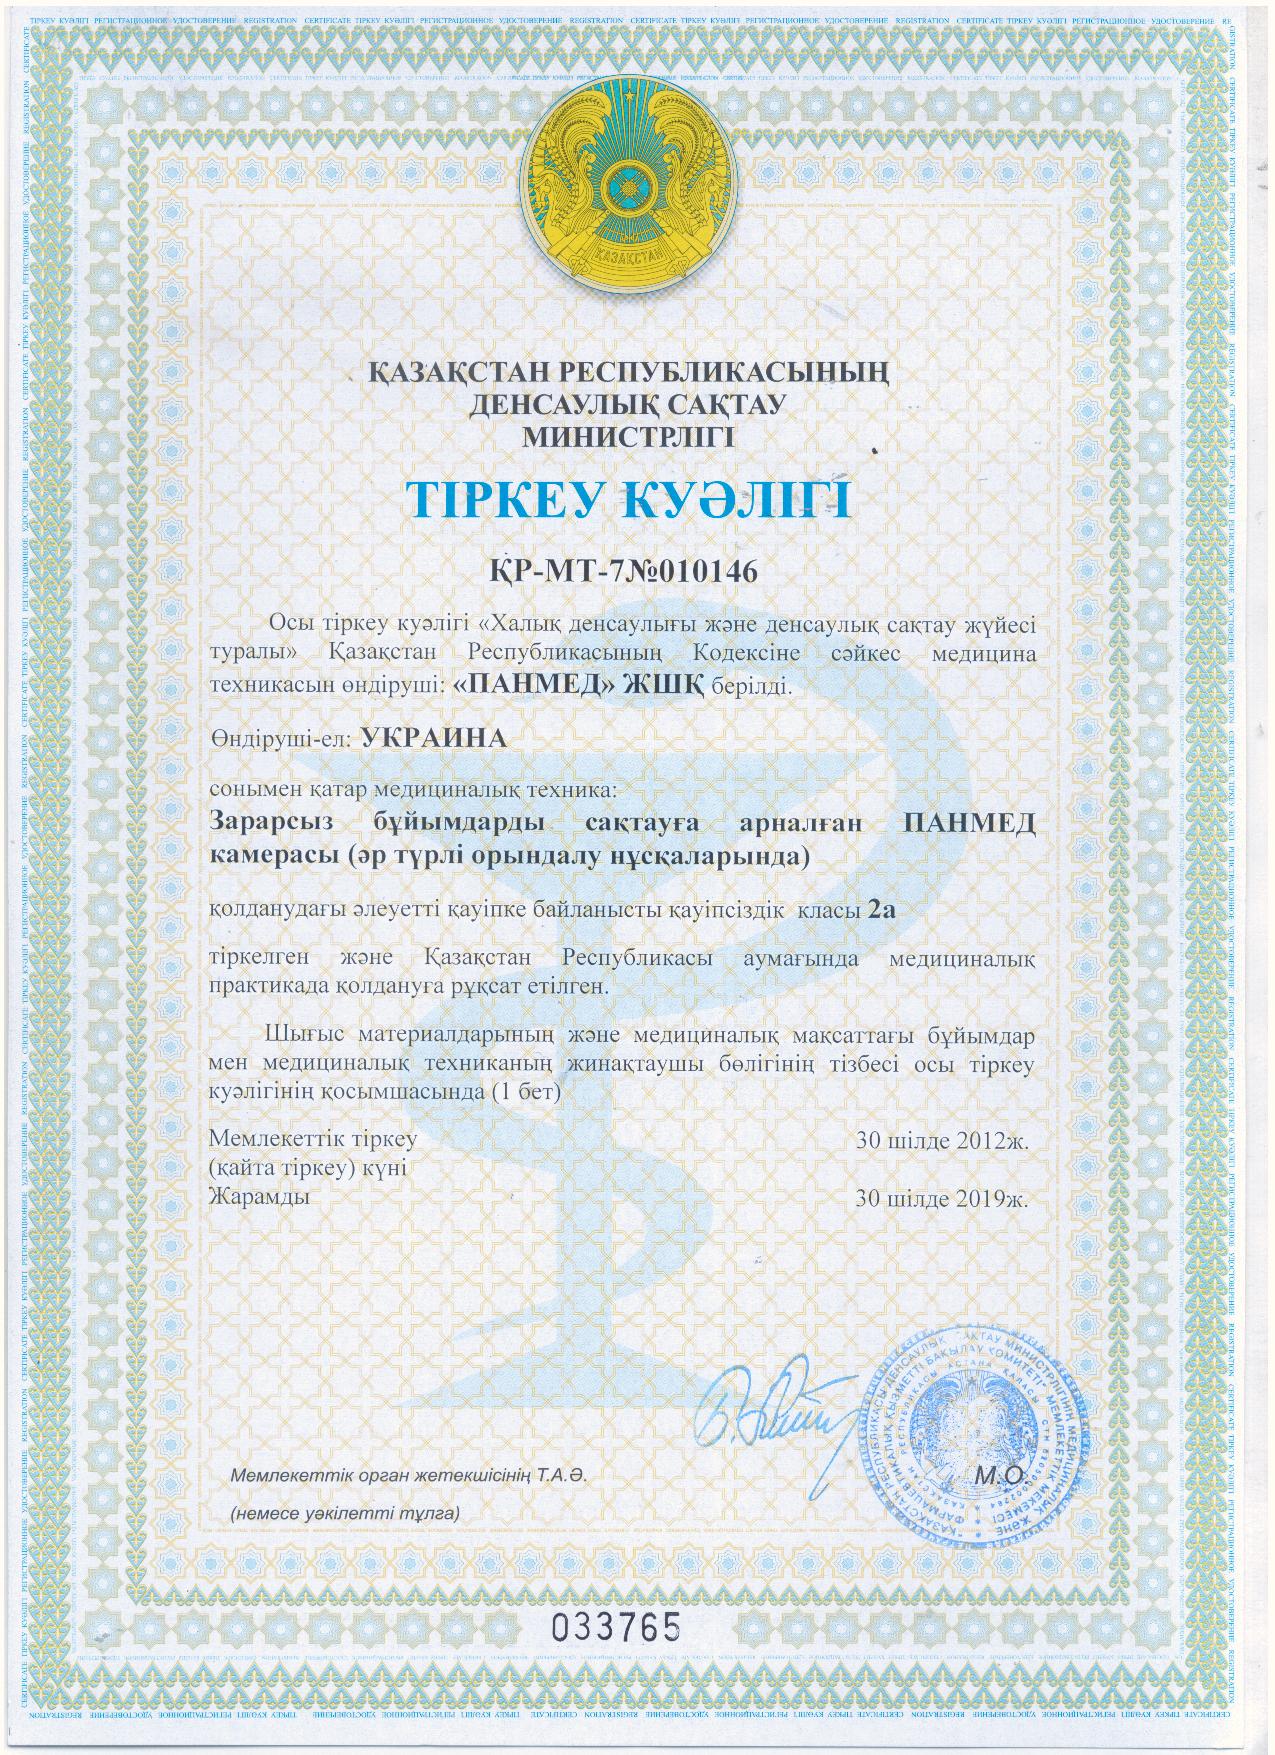 Регистрационное удостоверение Министерства здравоохранения Республики Казахстан